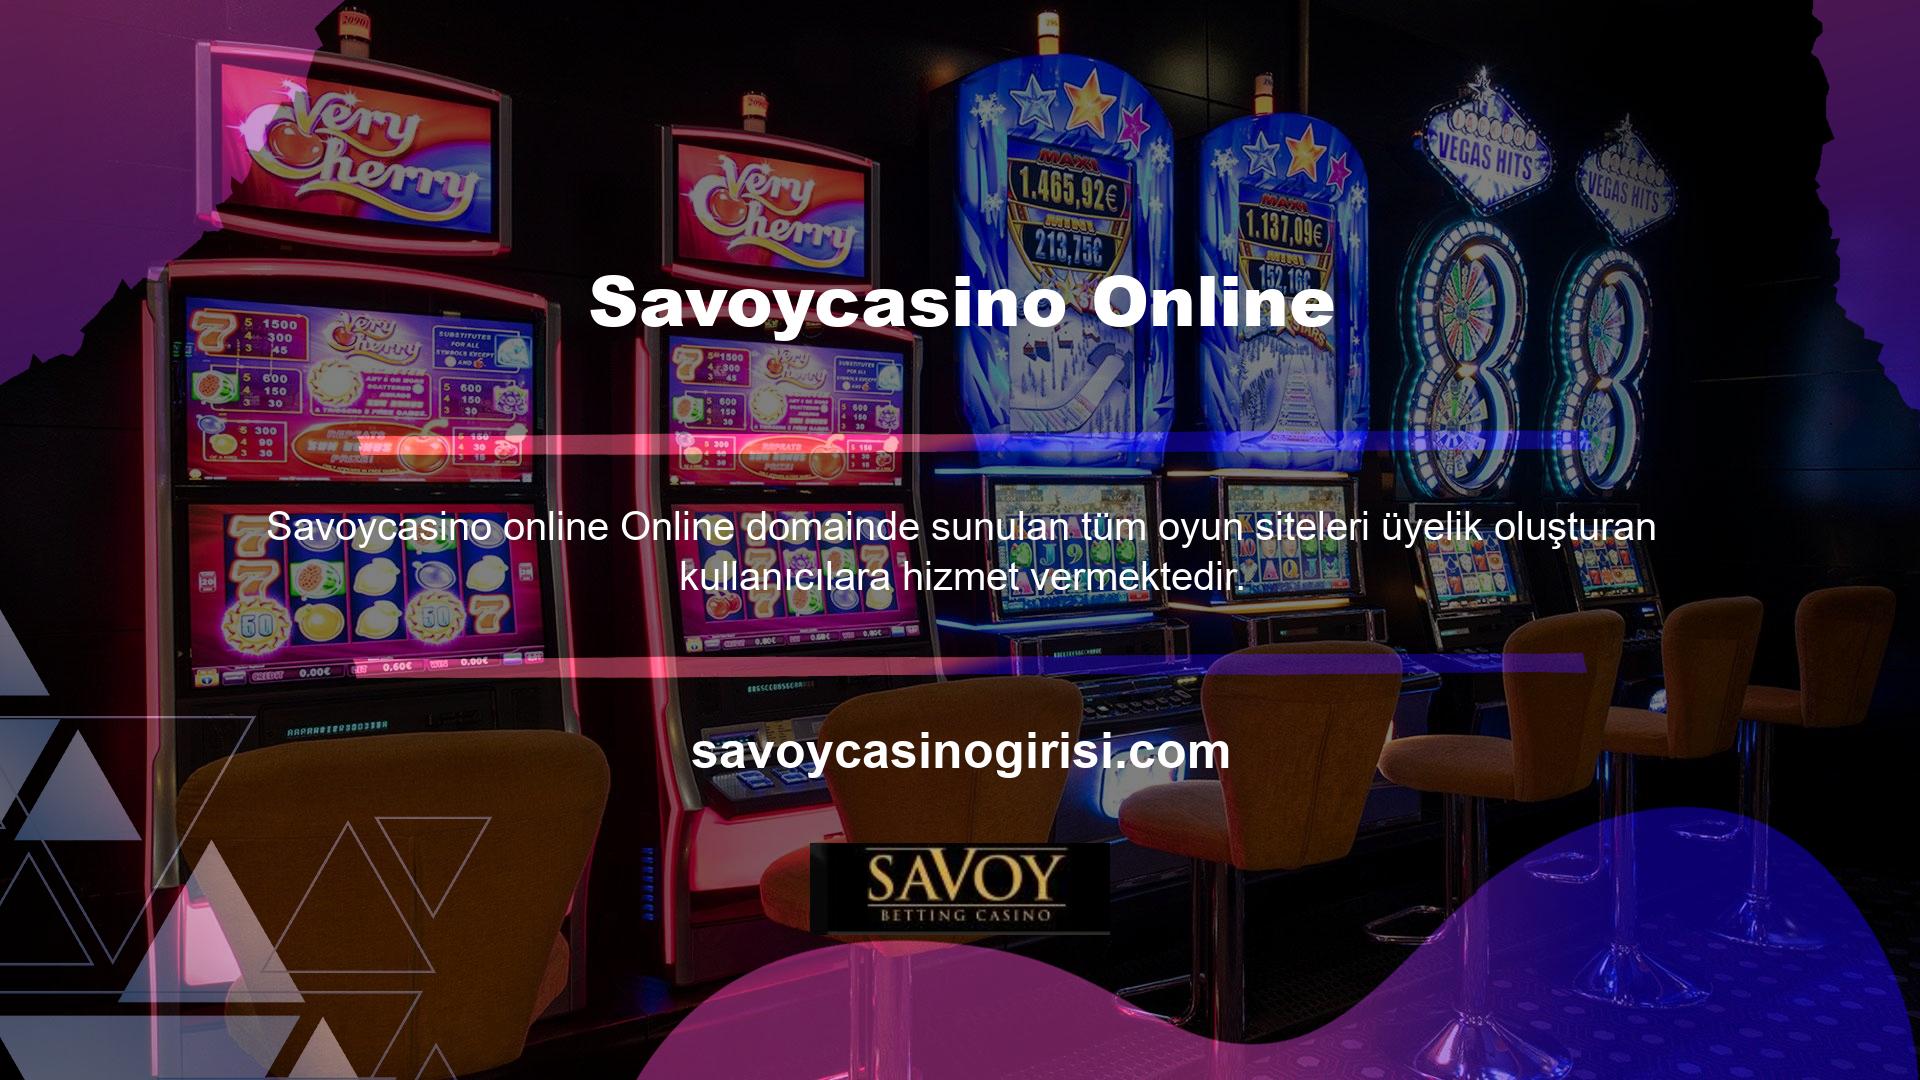 Savoycasino online web sitesi, üyelik formlarına kolay erişim ve üyelik oluşturma programlarına kaydolma sağlar